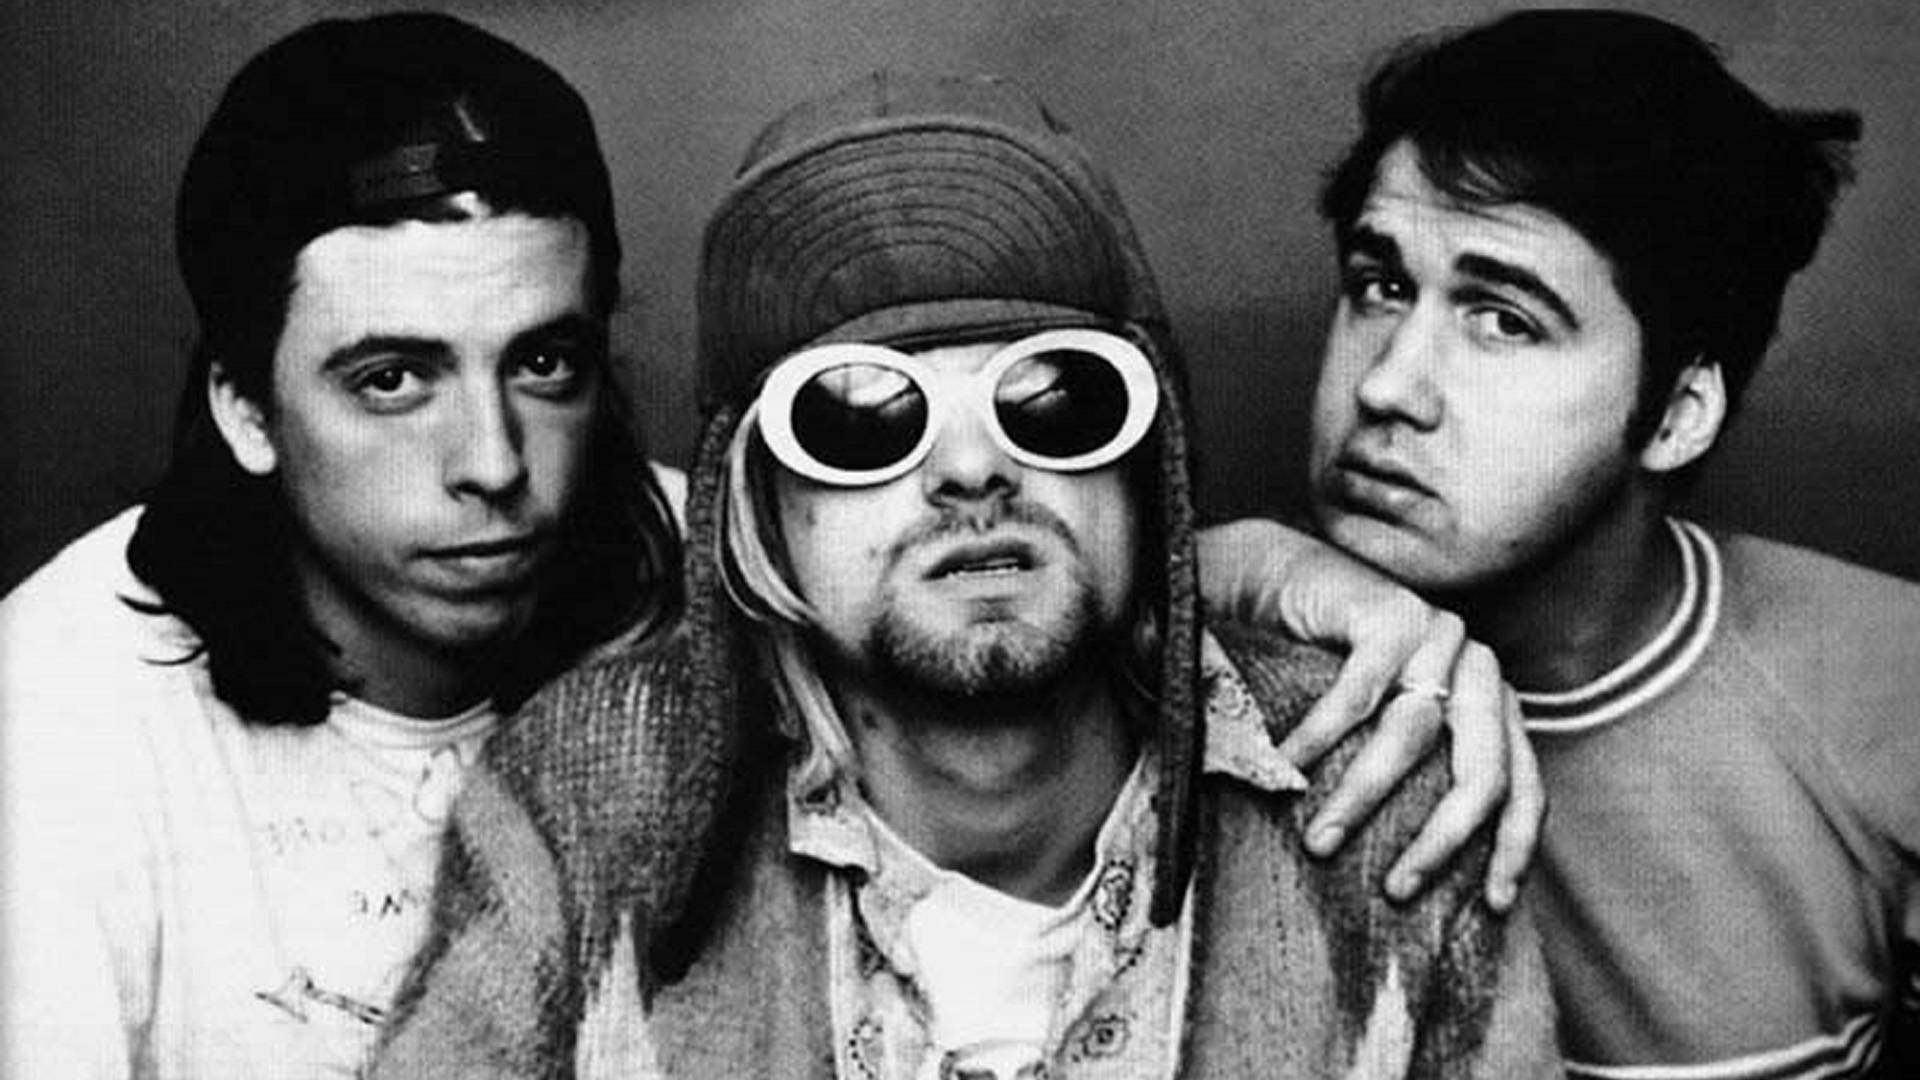 Membrosda Banda Nirvana. Papel de Parede